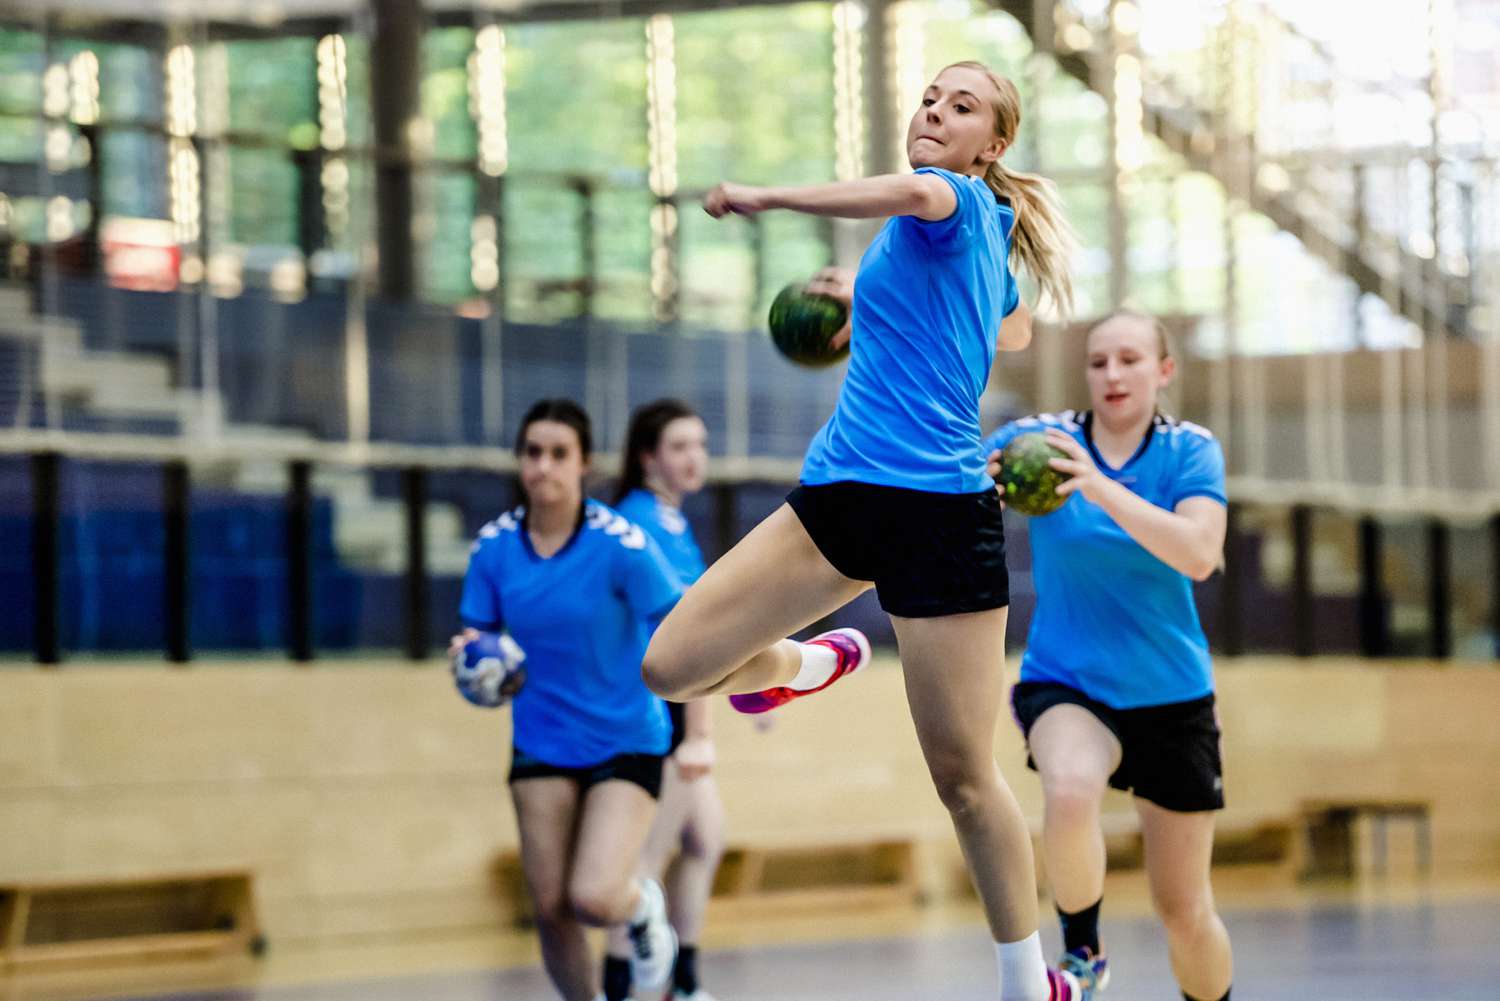 g\Girl playing handball